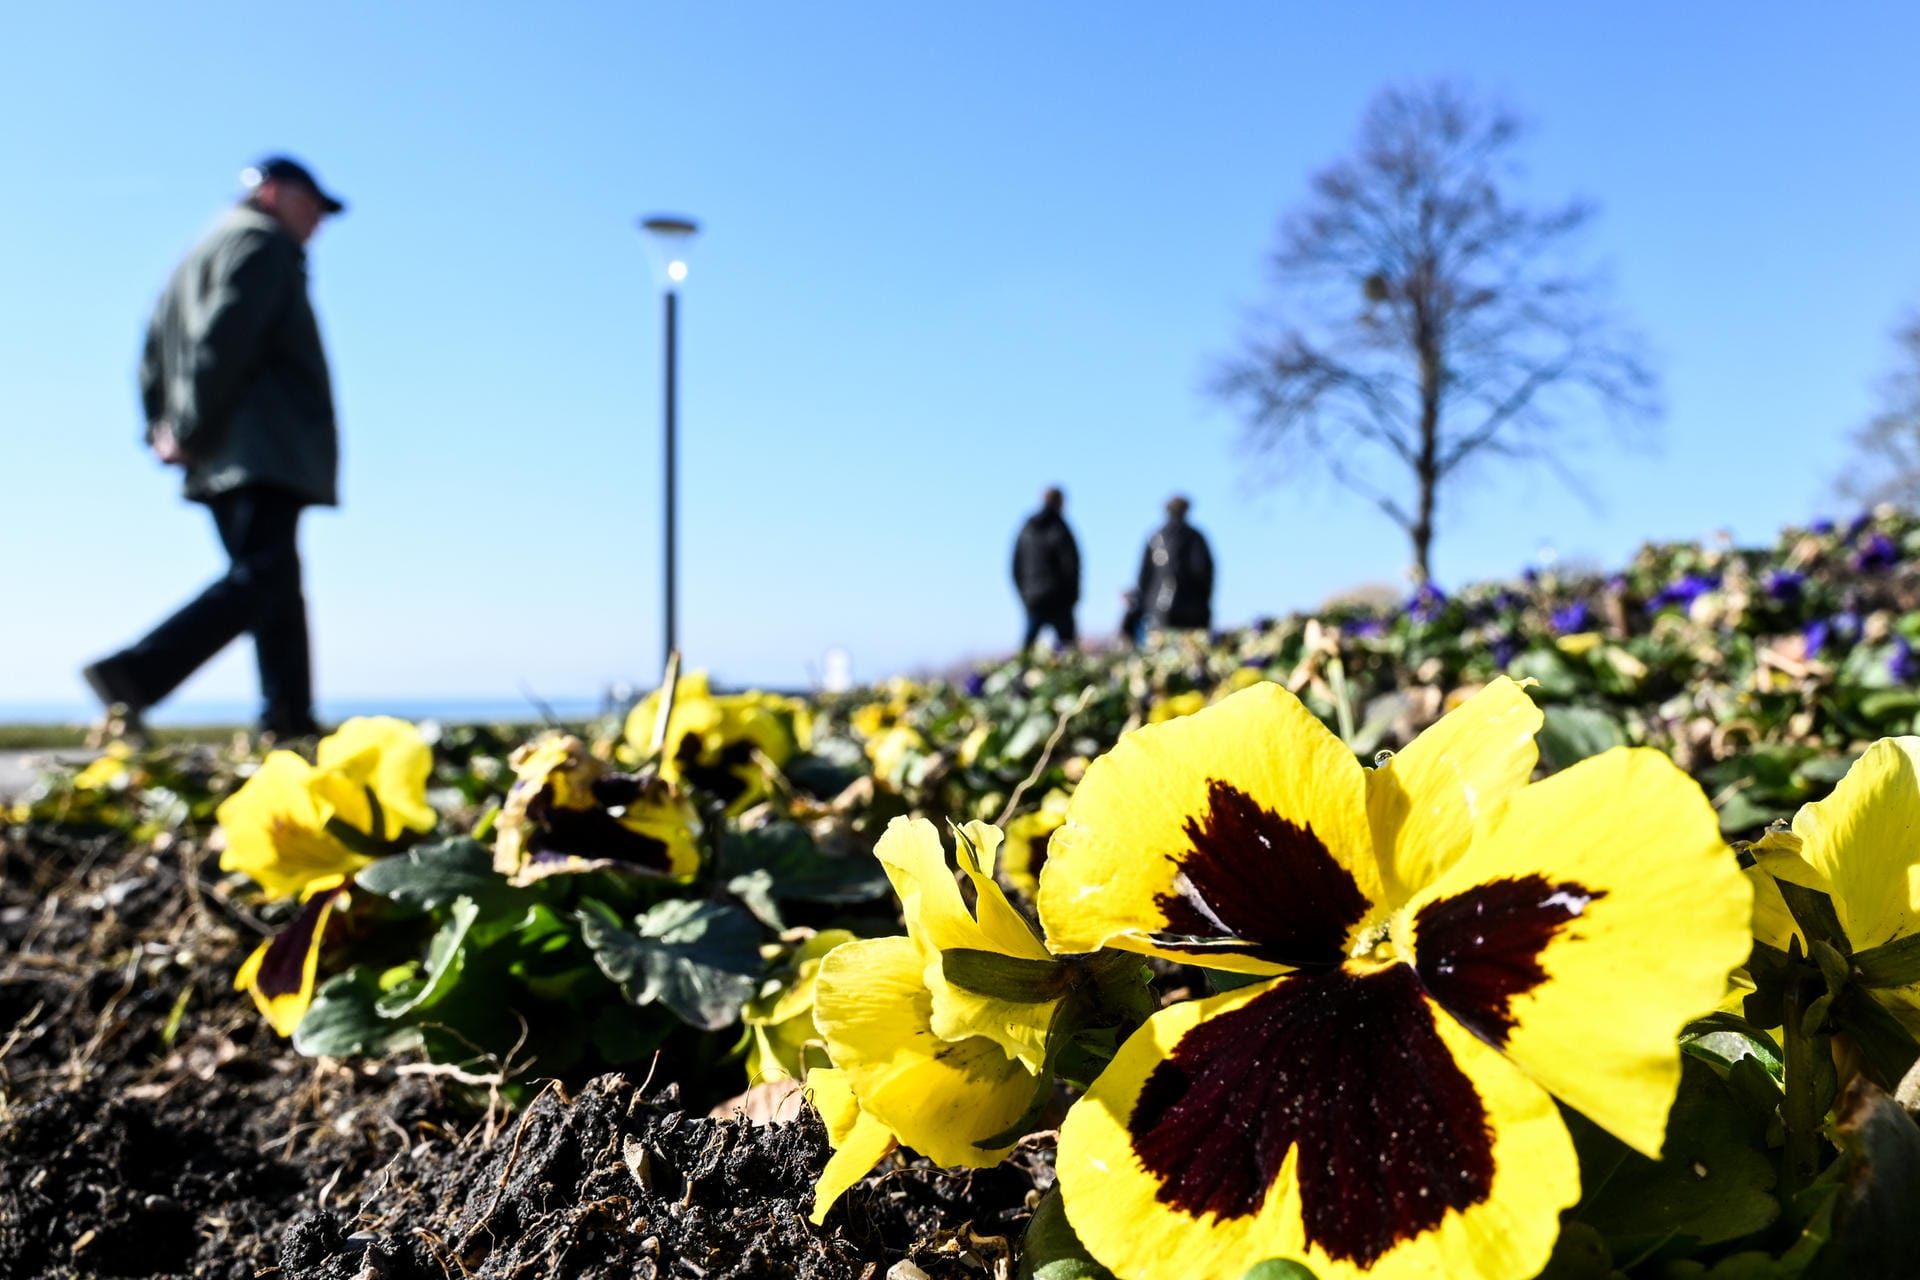 Stecklinge blühen am Bodensee: Die milden Temperaturen bringen schon zahlreiche Blumen hervor.